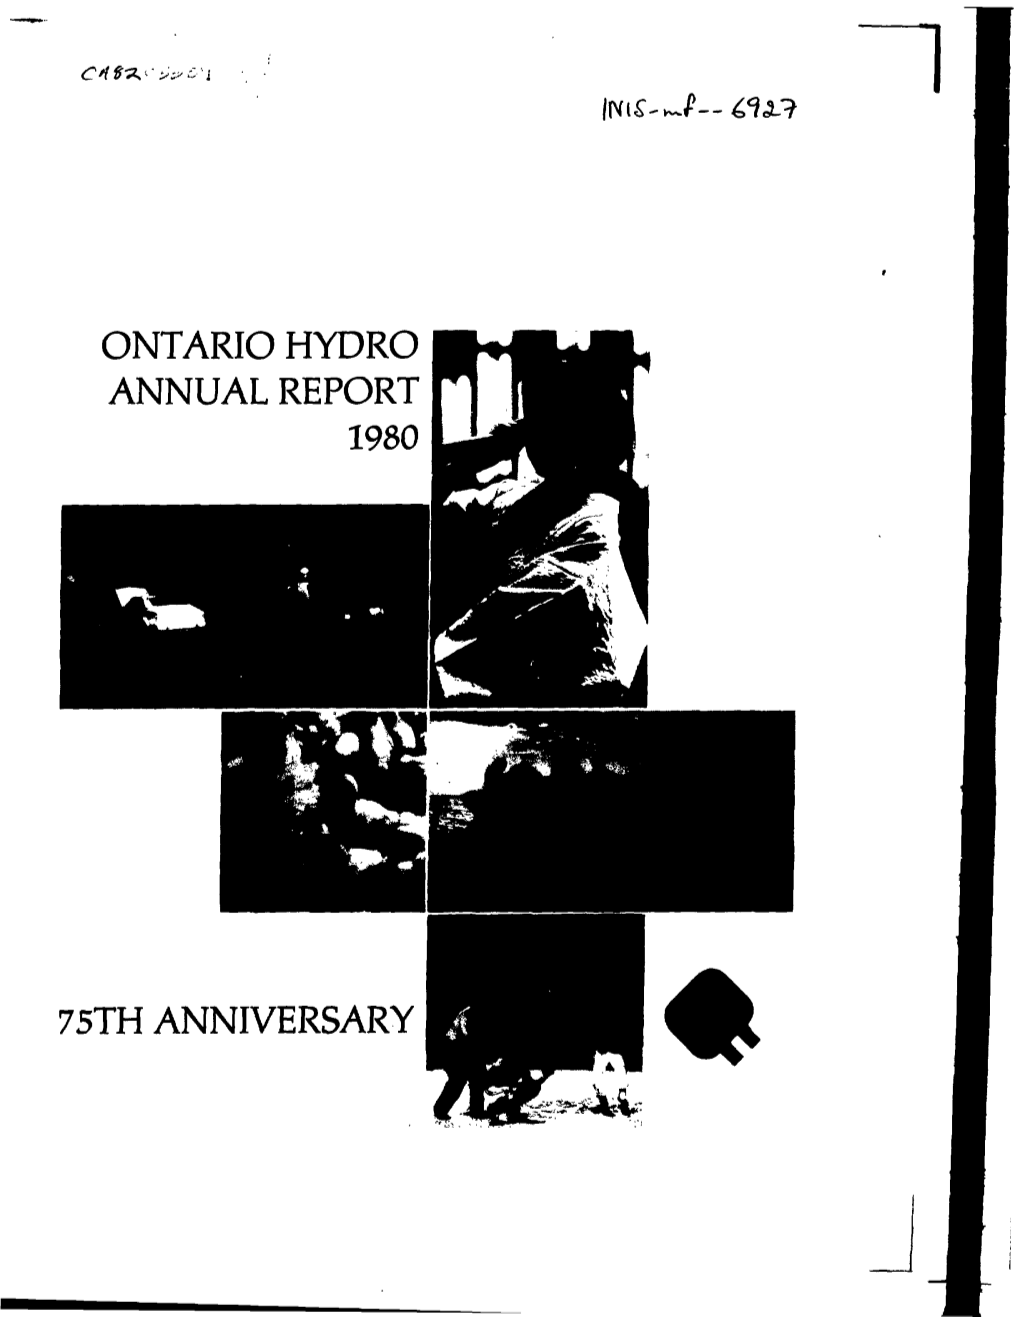 Ontario Hydro Annual Report 75Th Anniversary